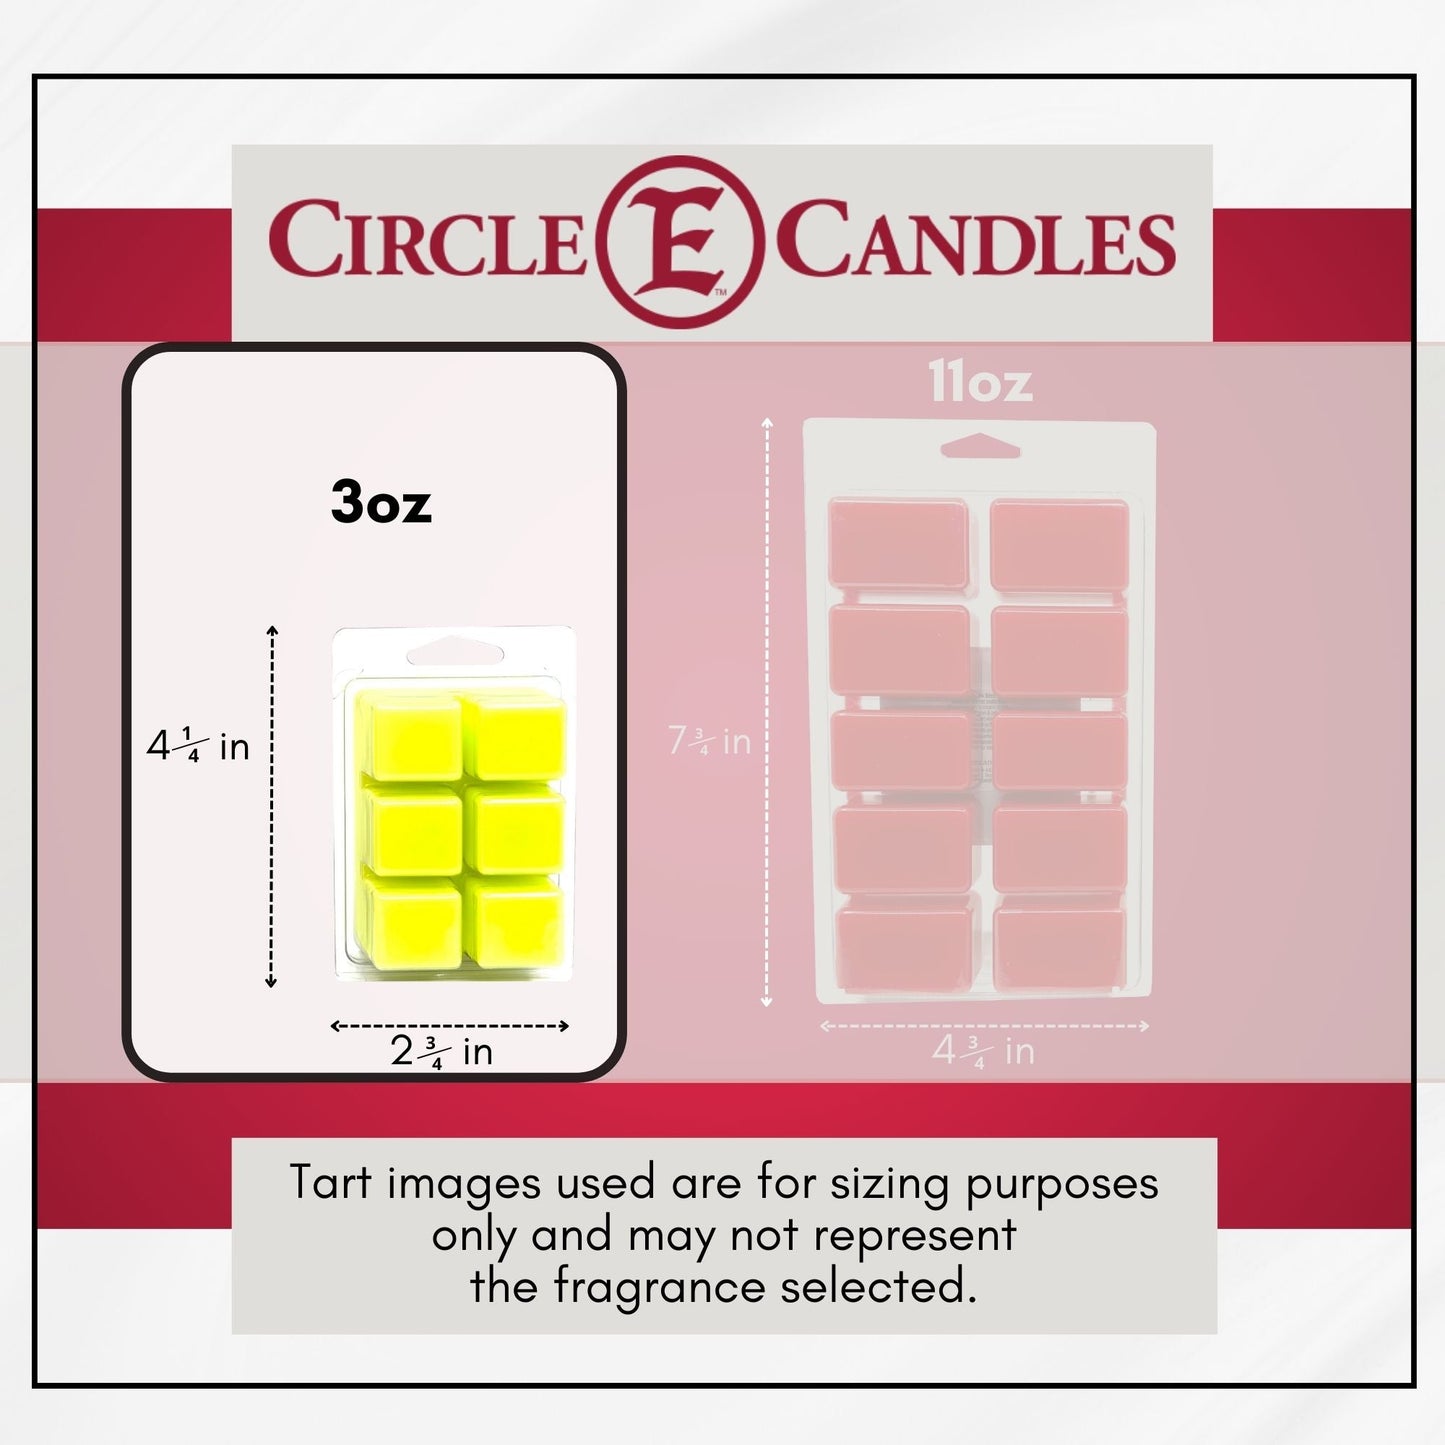 Circle E Candles 3oz Wax Tart Melt Size